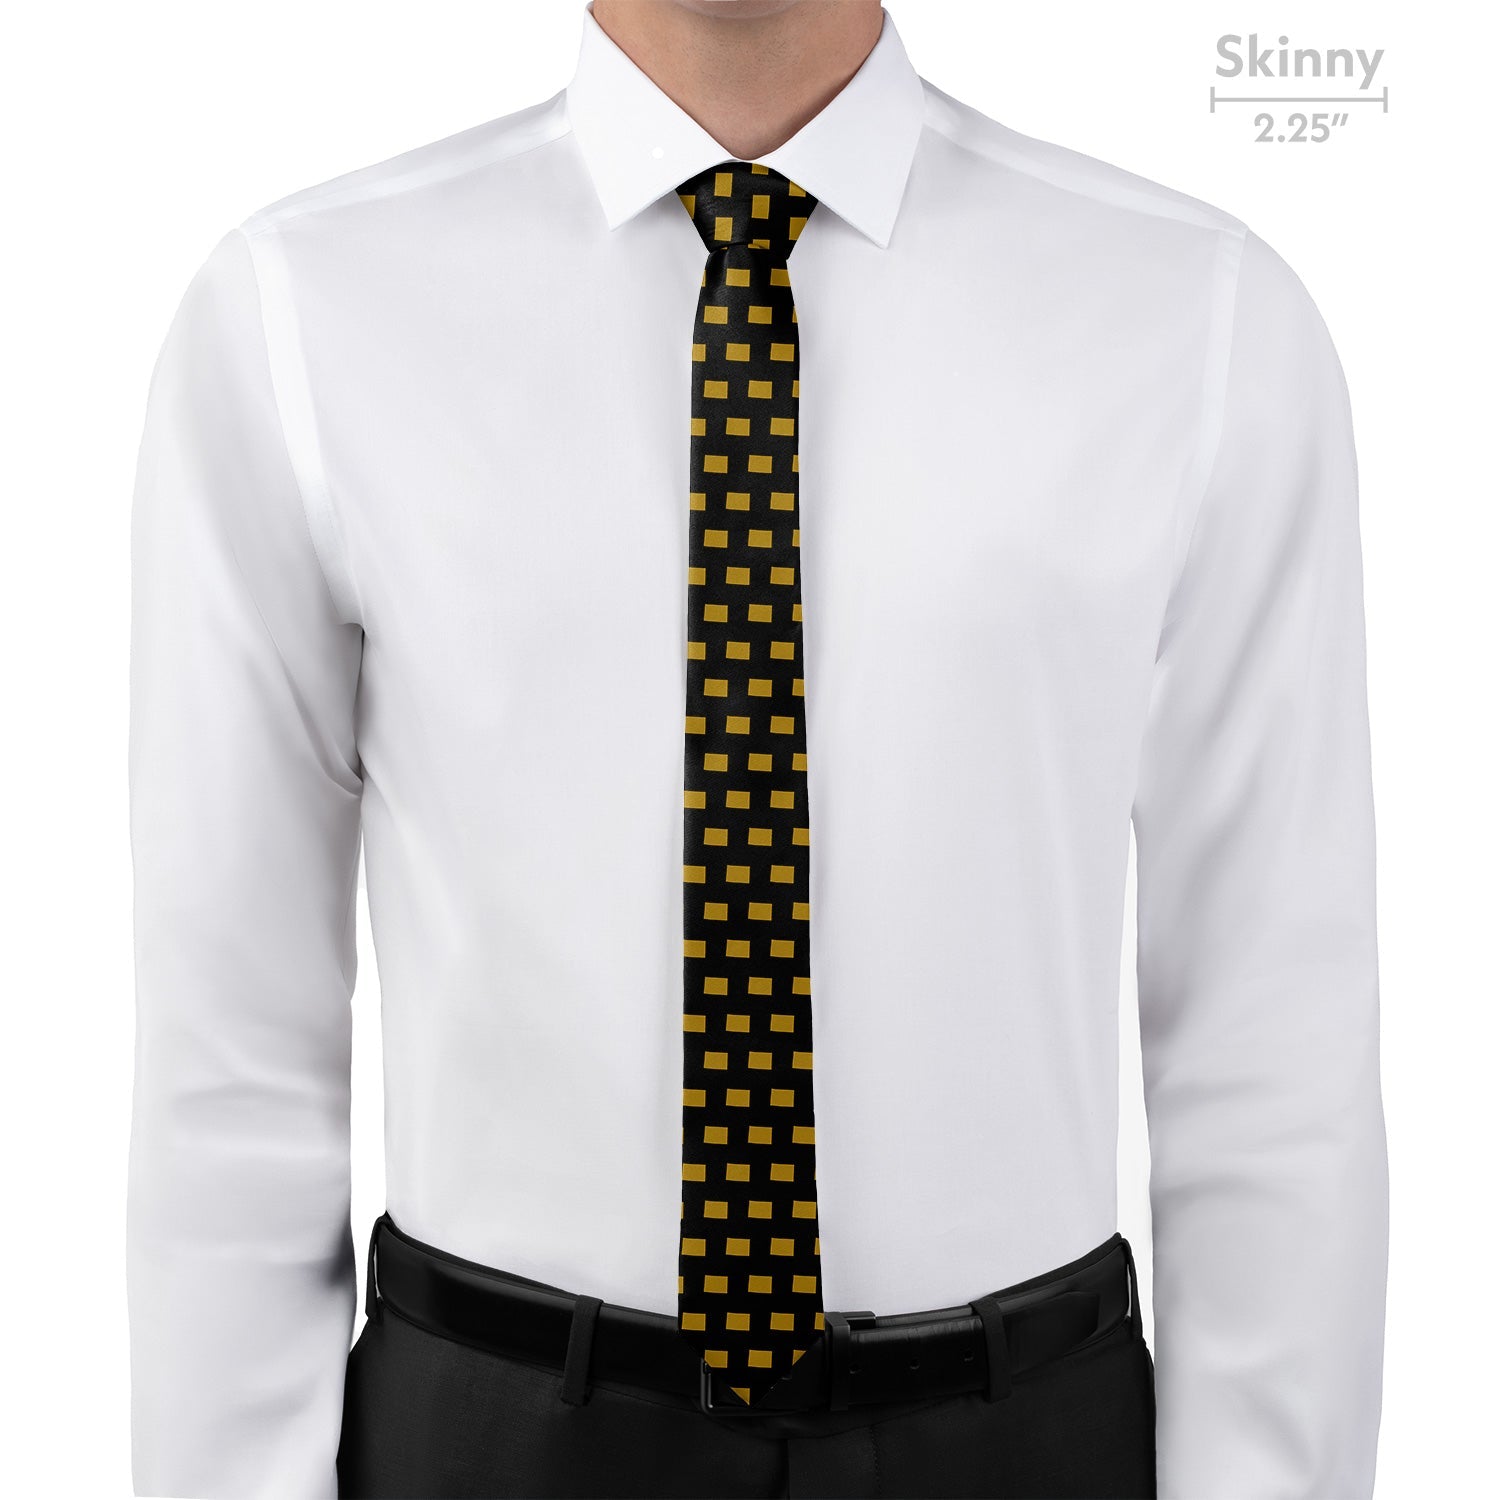 Colorado State Outline Necktie - Skinny - Knotty Tie Co.